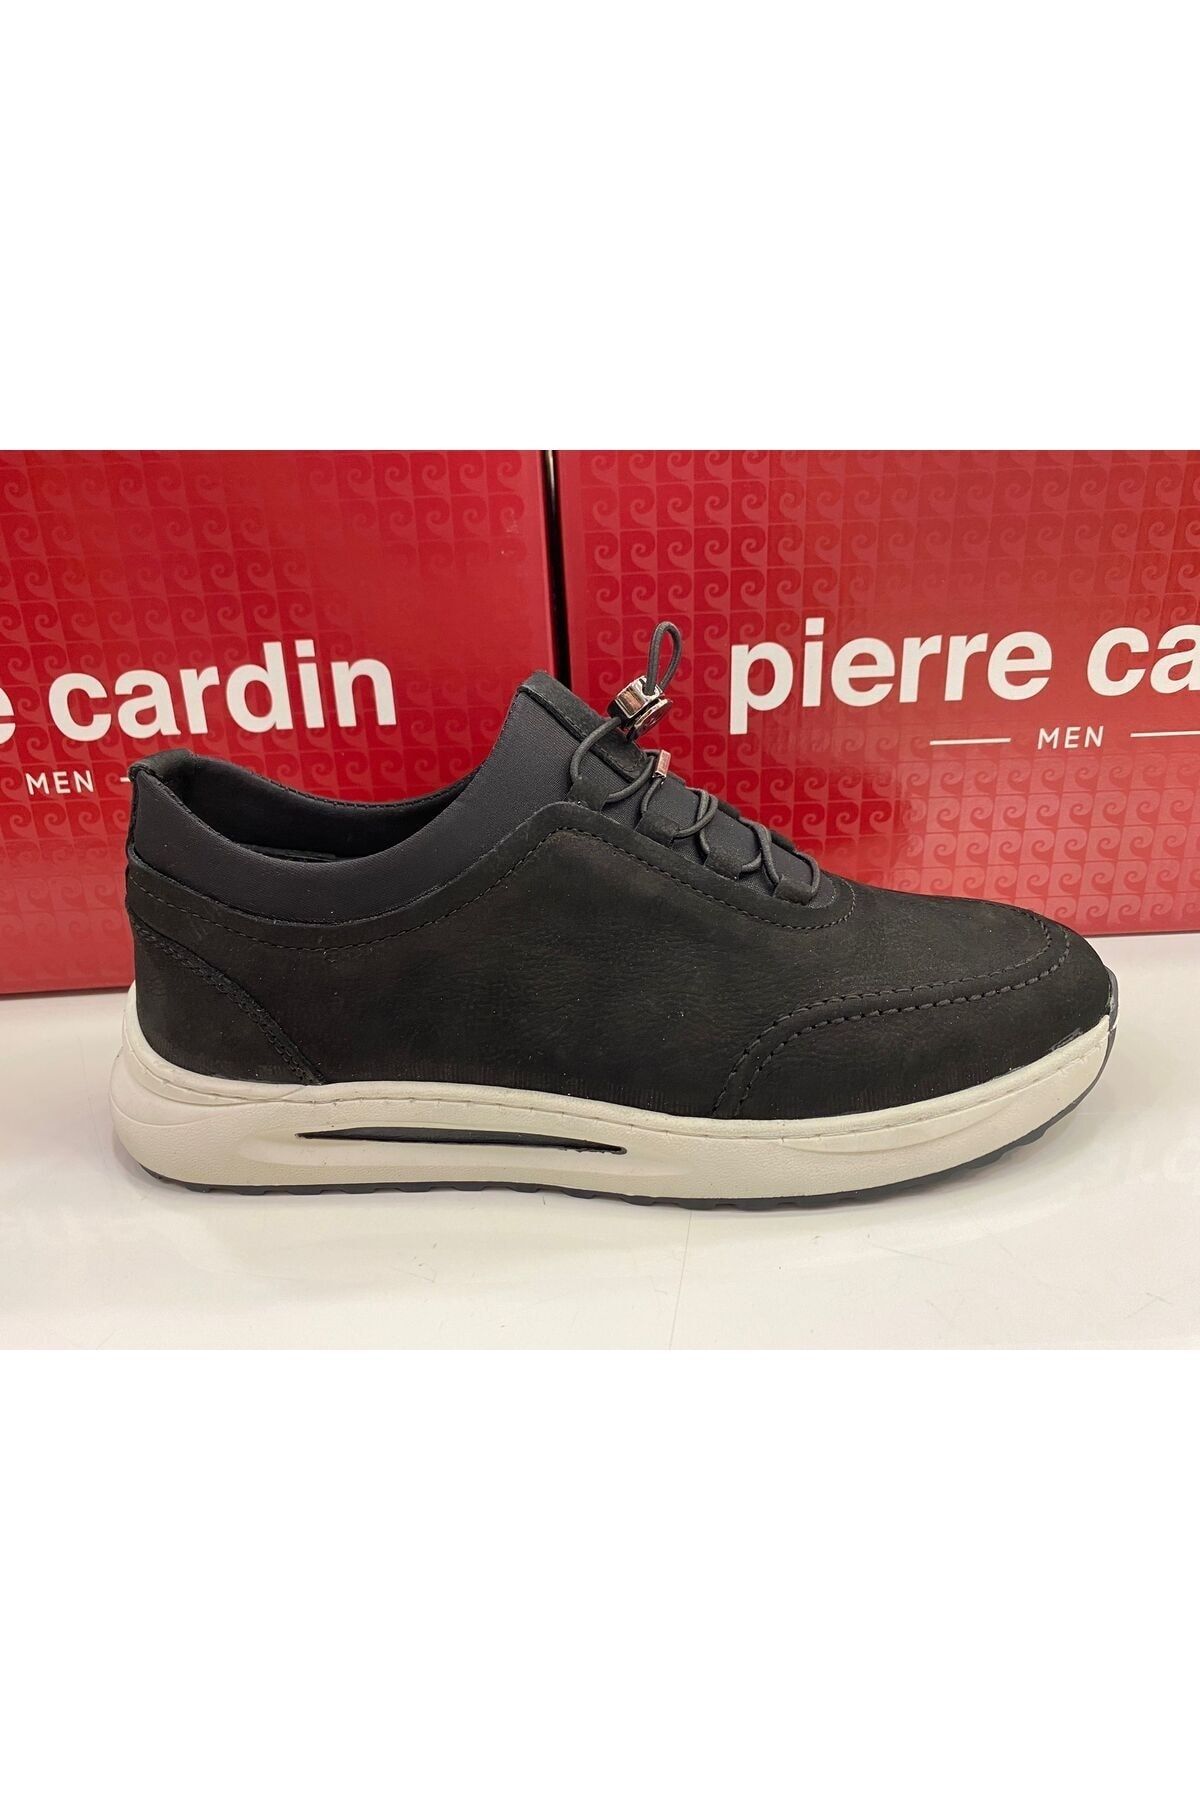 Pierre Cardin erkek casual ayakkabı hakiki deri ortopedik ayakkabı siyah nubuk